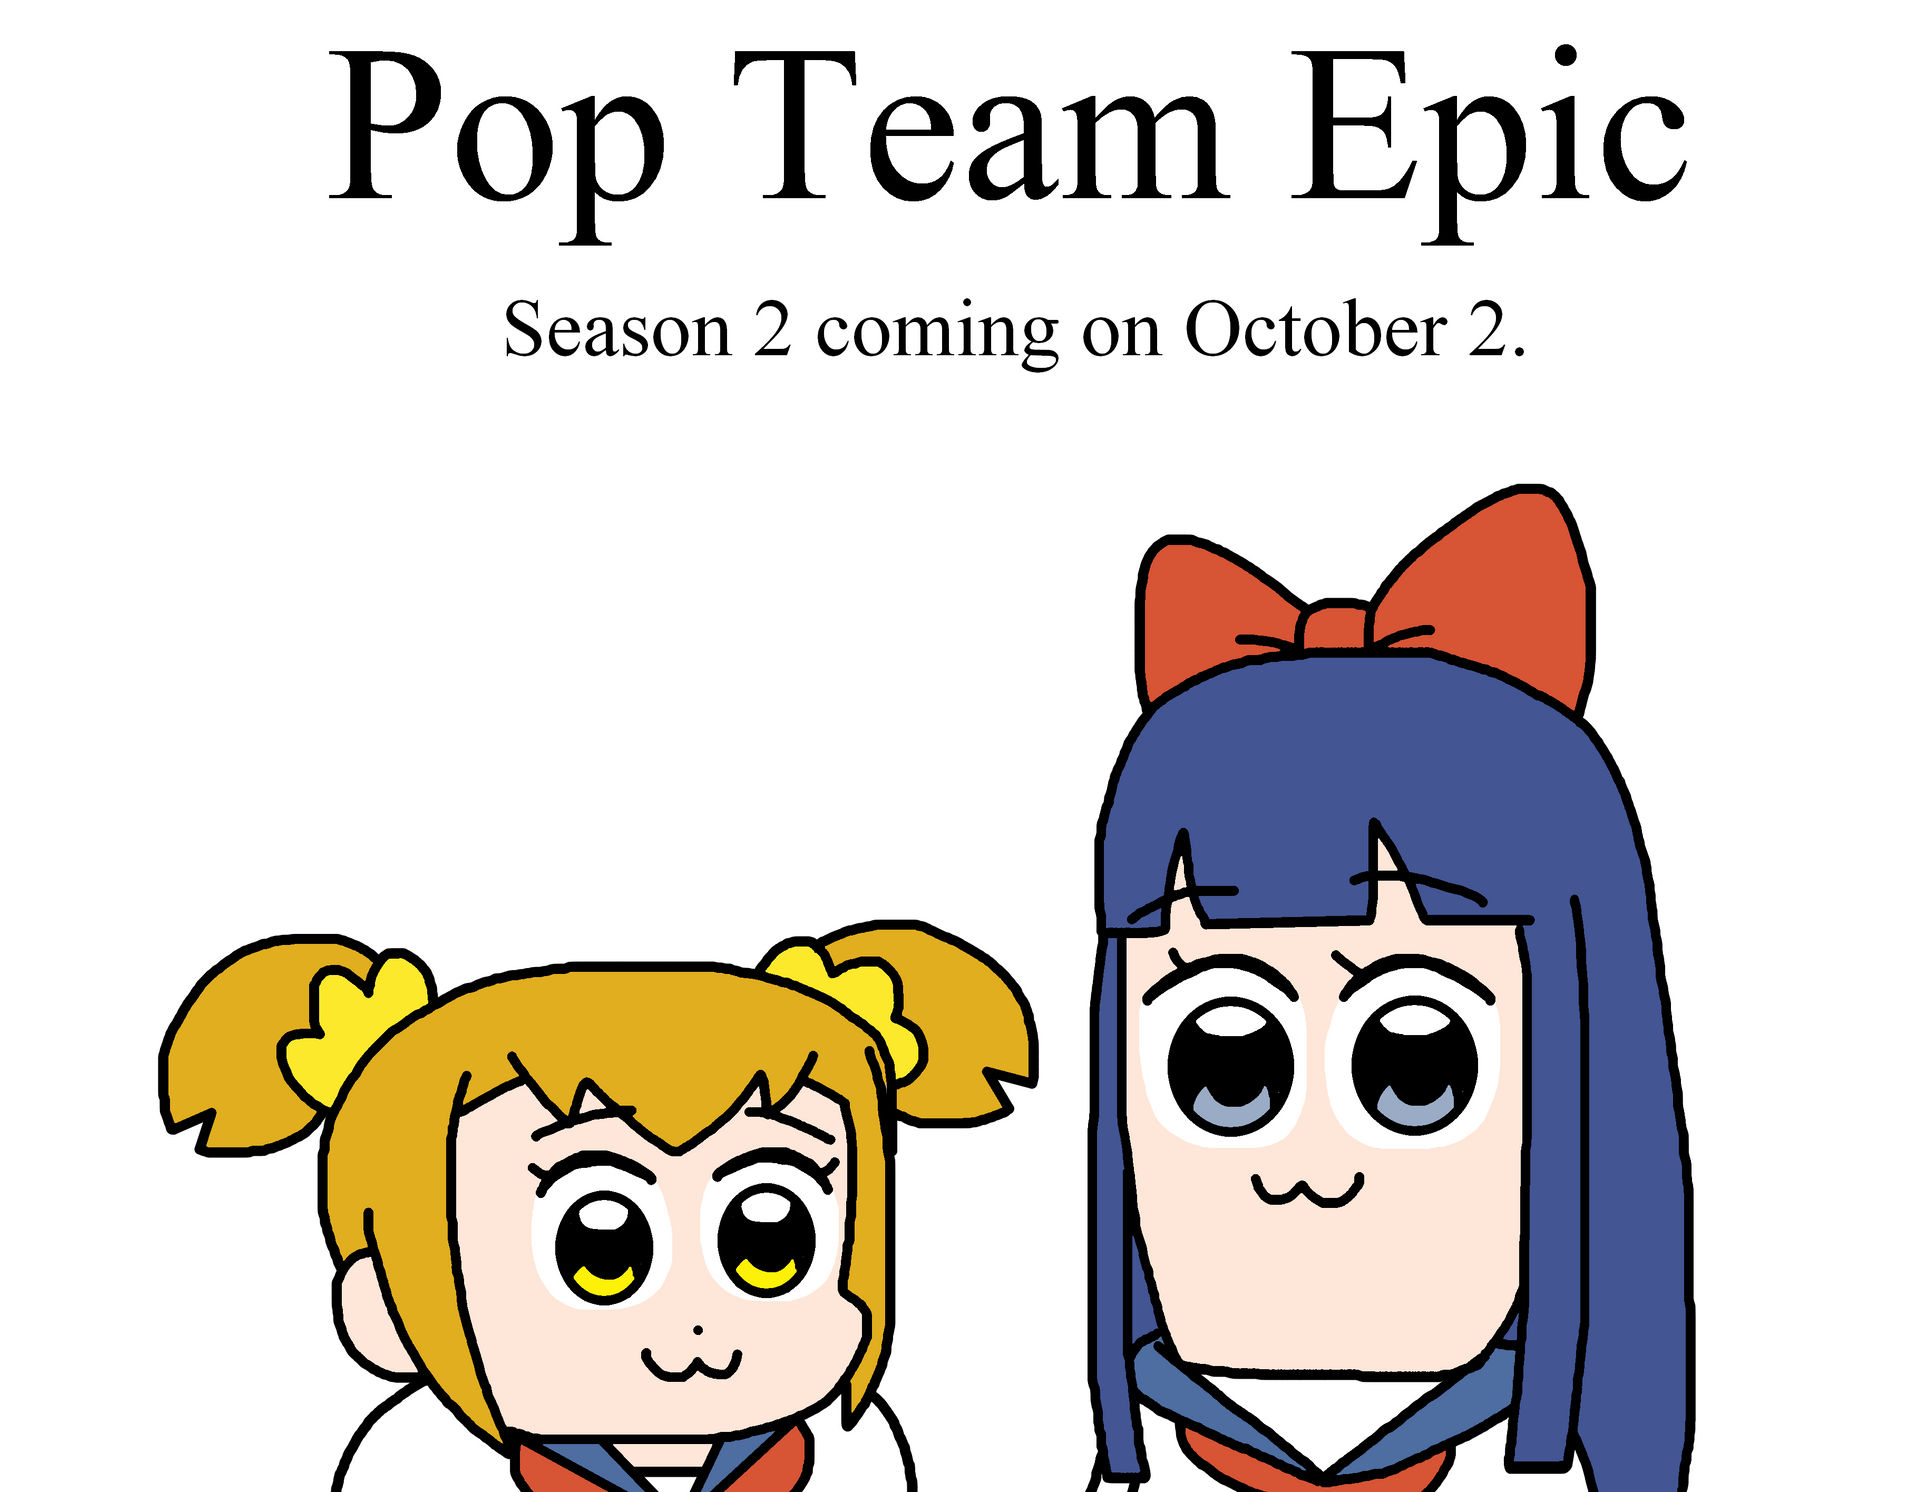 justering gå på indkøb gøre ondt Pop Team Epic season 2 in October 2 by Ultra-Shounen-Kai-Z on DeviantArt